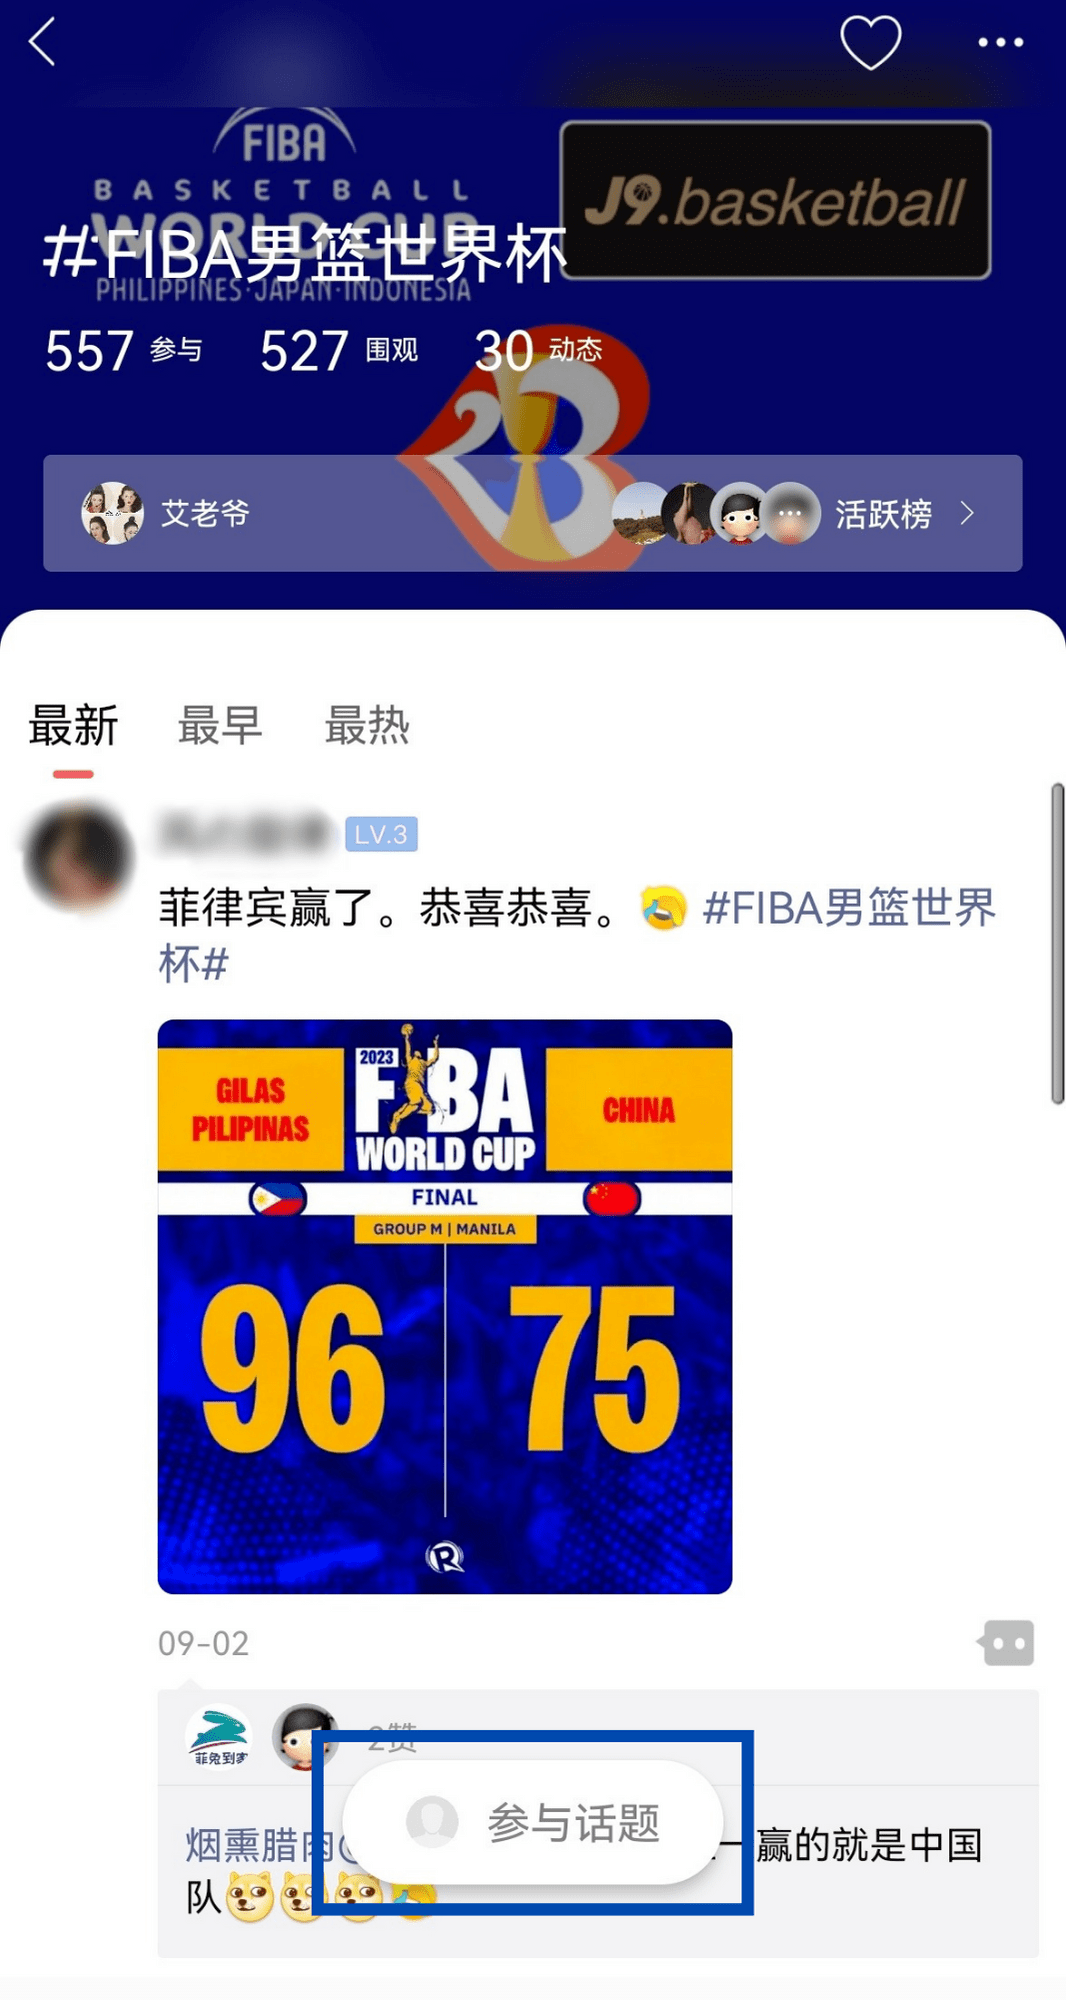 皇冠信用网APP下载_【送FIBA总决赛门票!】下载菲龙网APP 3.0!